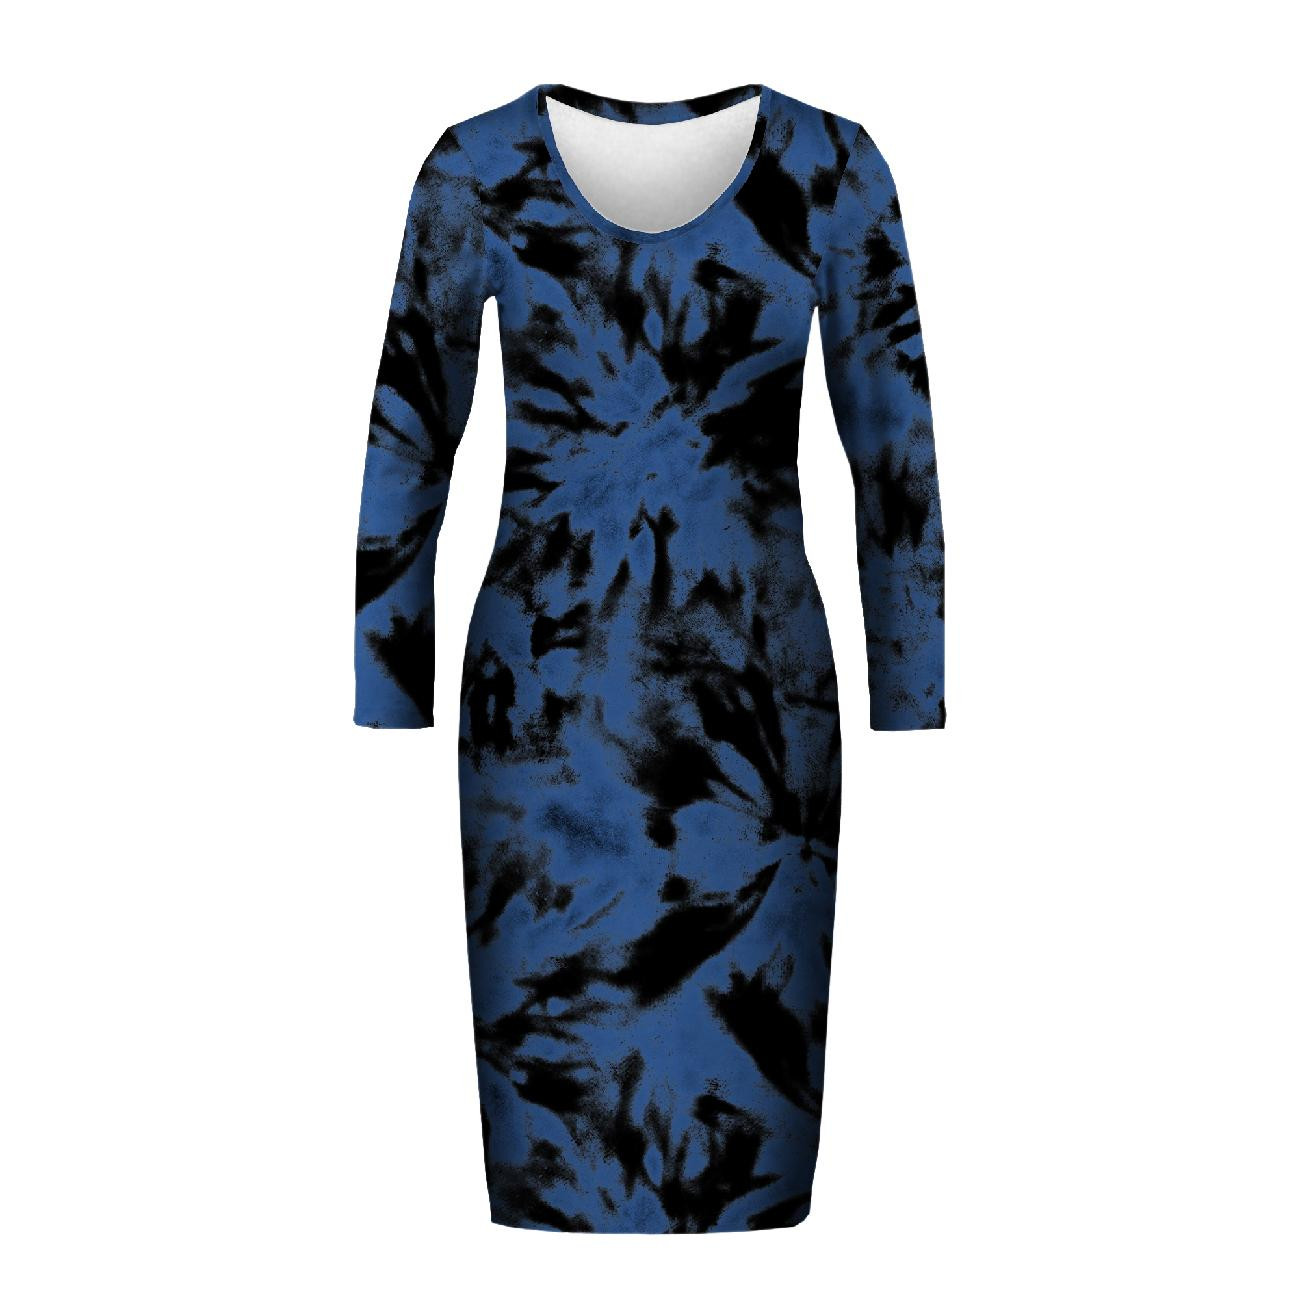 Tužkové šaty (ALISA) - BATIKA vz. 1 / classic blue - Sada šití